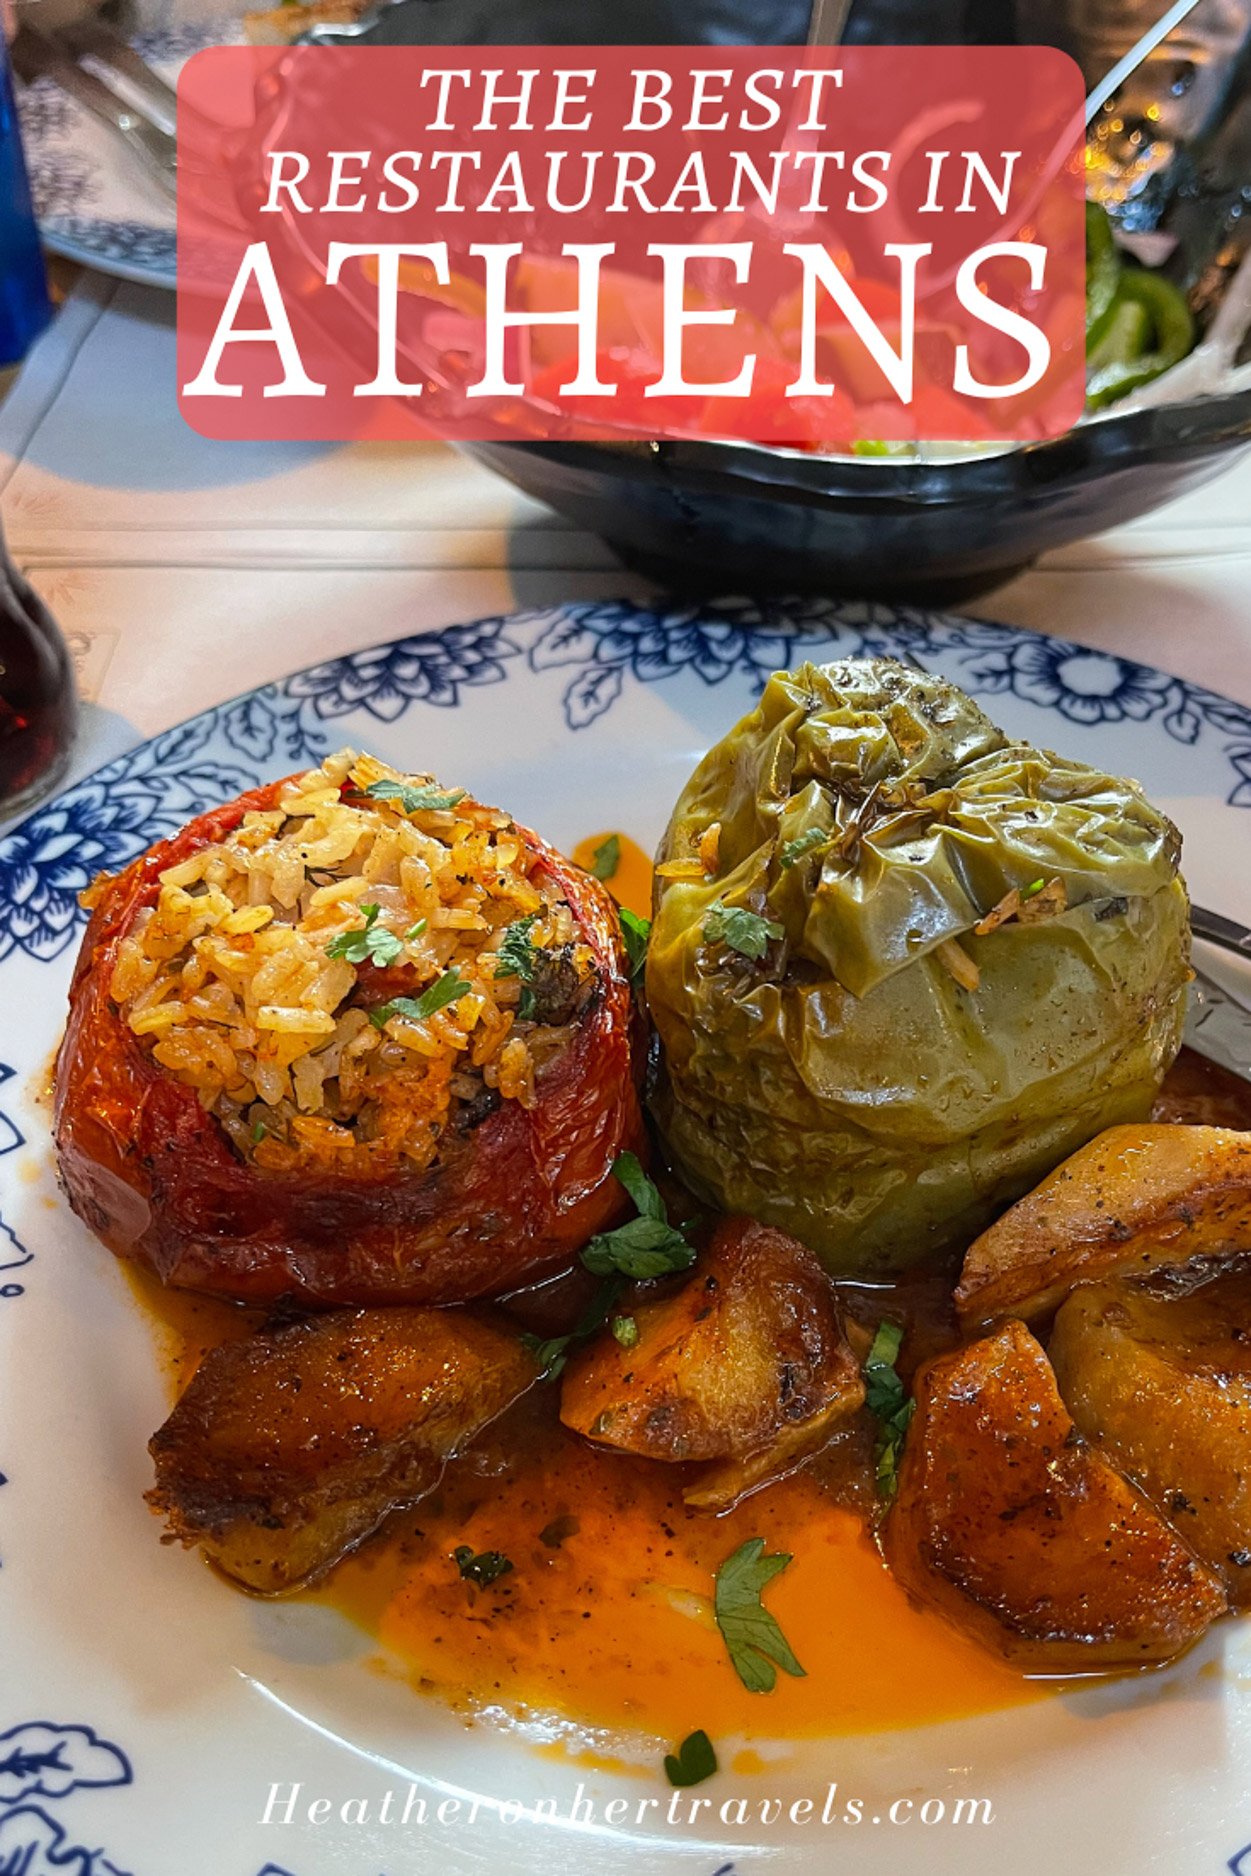 Best restaurants in Athens Photo Heatheronhertravels.com